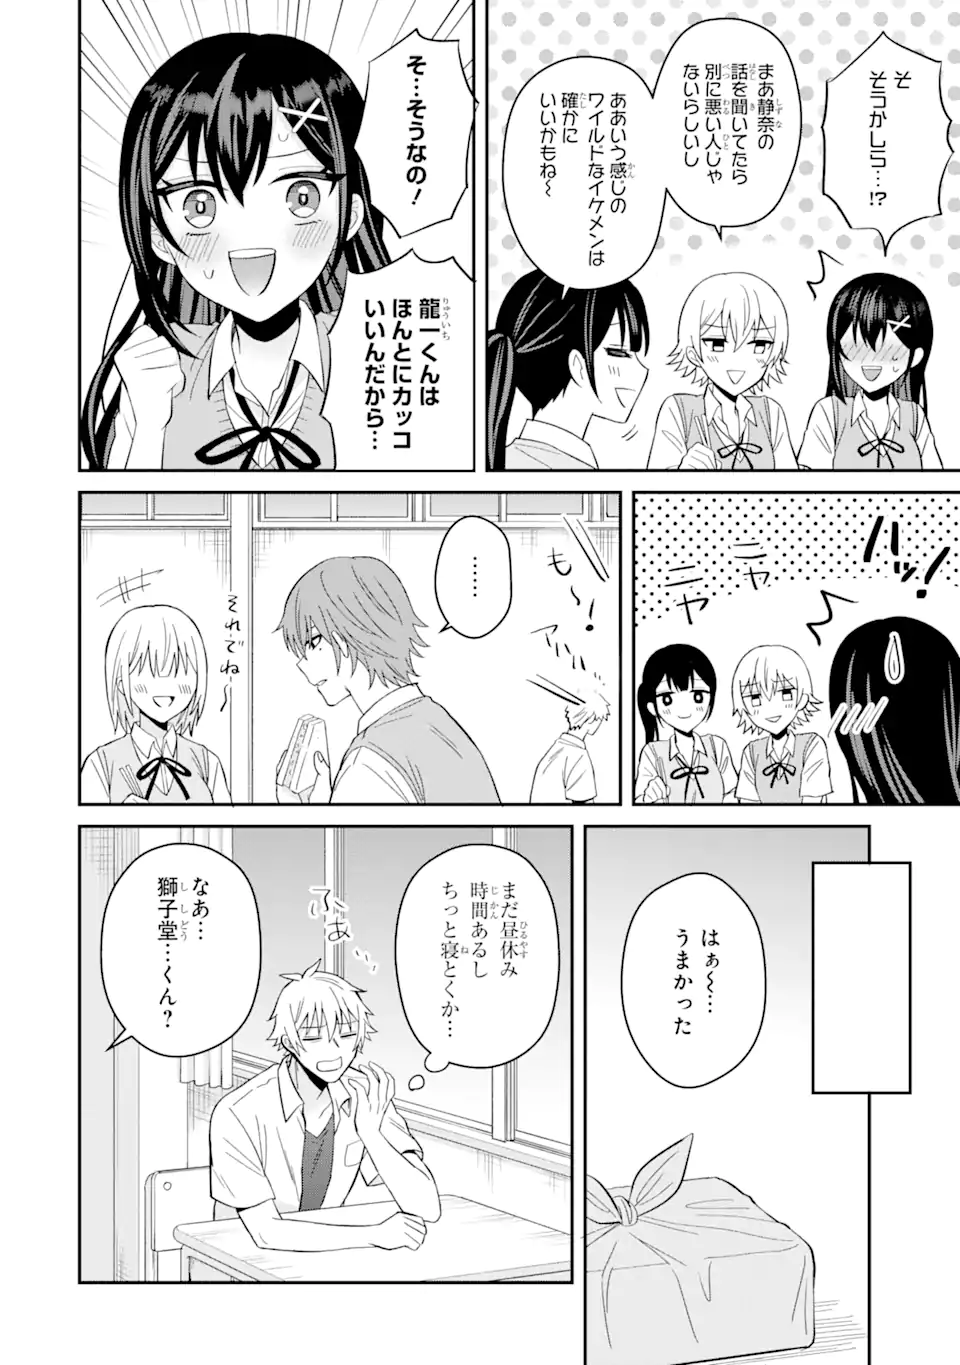 Netorare Manga no Kuzu Otoko ni Tensei Shita Hazu ga Heroine ga Yottekuru Ken - Chapter 11.2 - Page 6